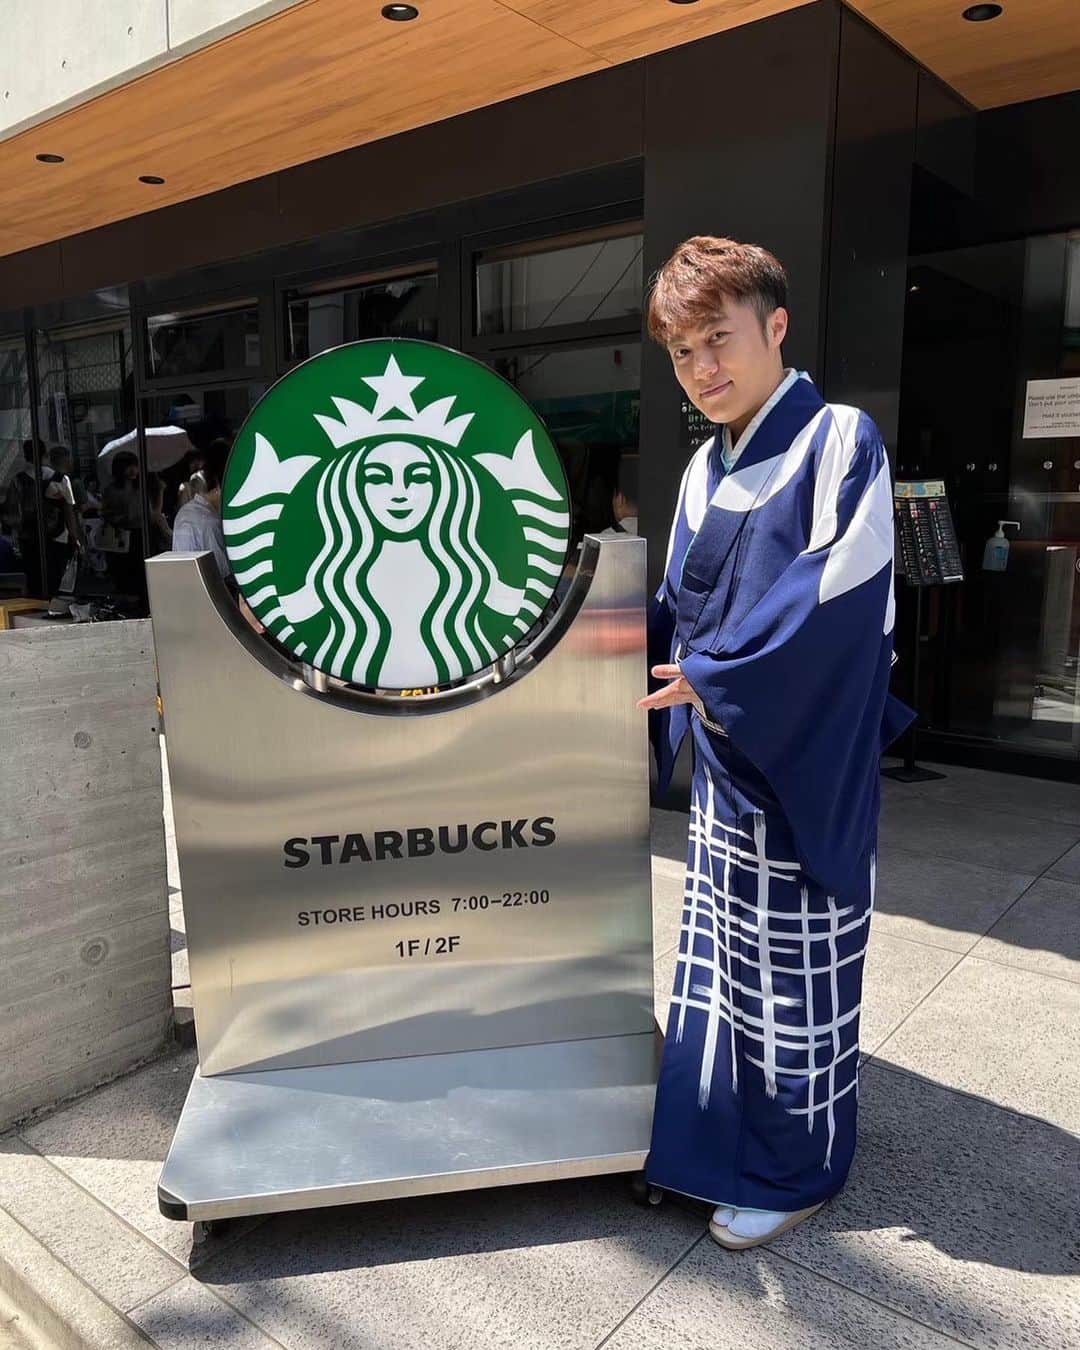 はやぶさのインスタグラム：「浅草での写真です。 まだ本格的な夏になる前に行った時の写真なので着物を着ています。今なら浴衣ですよね。スターバックスは海外のお客様でいっぱいでした(°▽°)  【EN】  This is a photo taken in Asakusa.  I am wearing a kimono because I was there before the summer season.   If it were now, I would be wearing a yukata.   Starbucks was full of foreign customers (°▽°).  #はやぶさ #ヒカル #ヤマト #大滝ひかる #駿河ヤマト #イベント #一日一枚  #写真  #hayabusa #hikaru #yamato #event  #picstory  #picstagram #photooftheday  #photogram  #hayabusadiary  #はやぶさの日記  #fotohariini #浅草 #asakusa #starbucks  #スタバ」